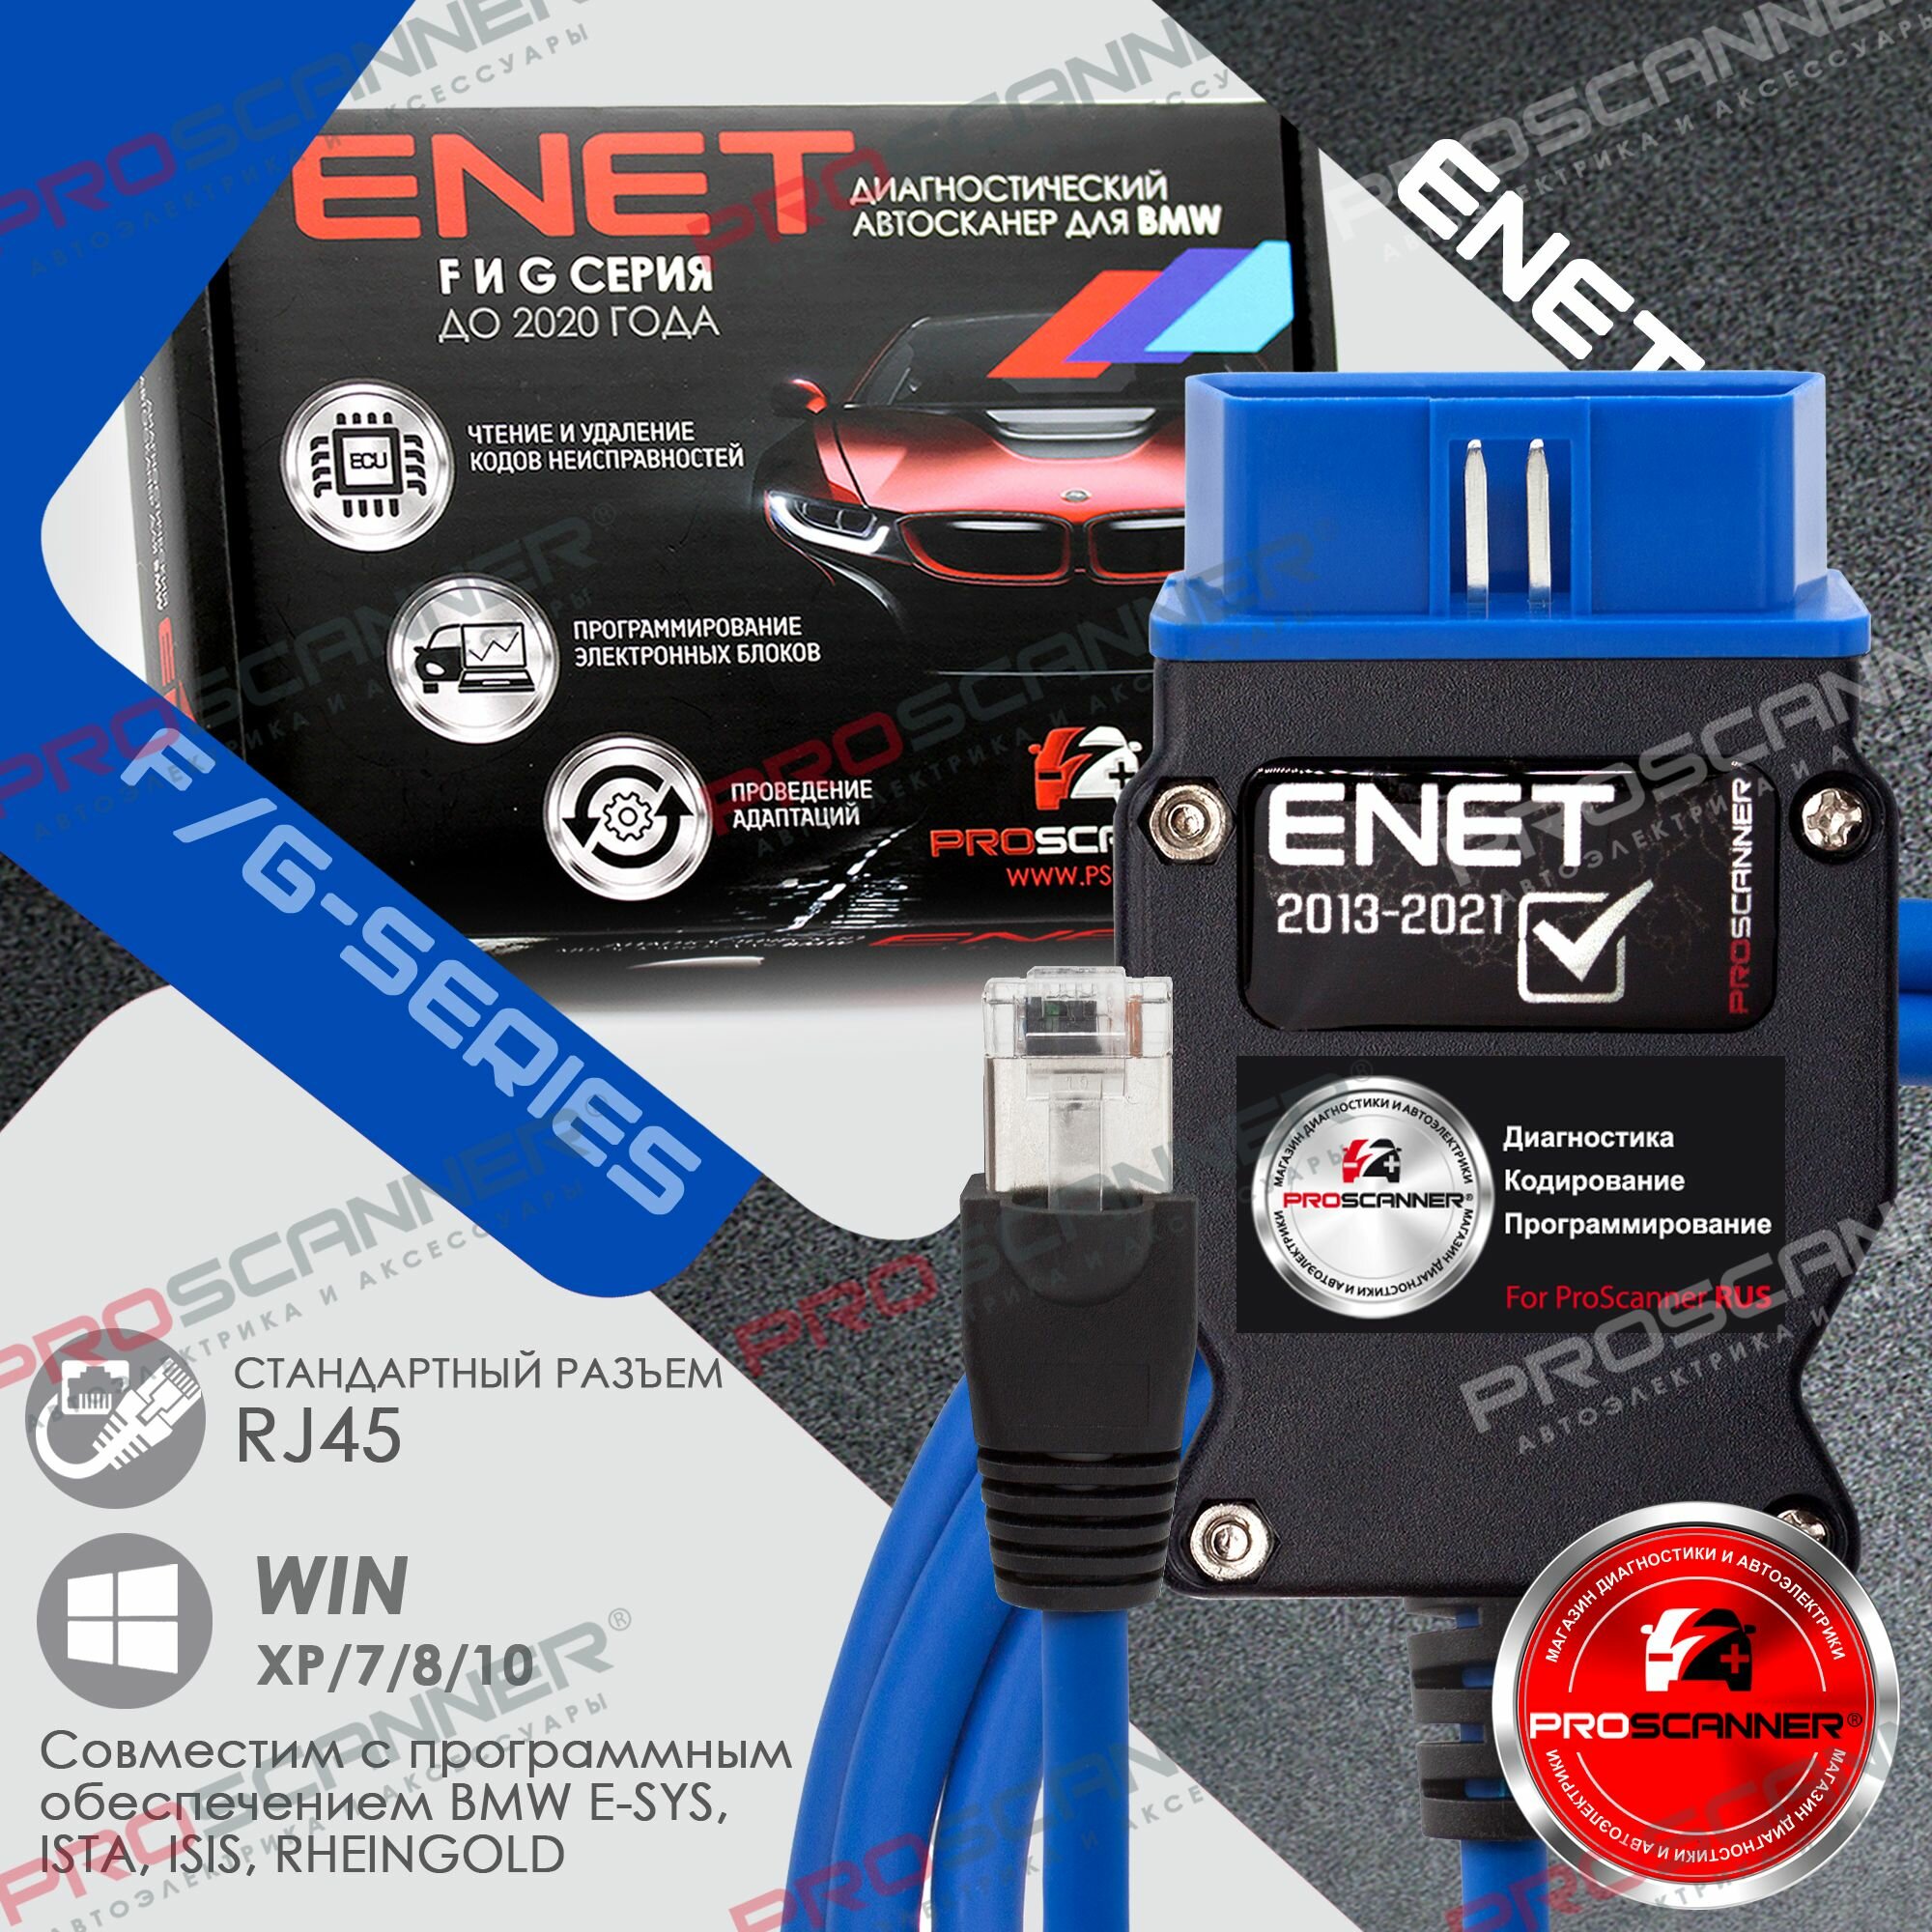 BMW ENET PRO кабель диагностический для программ ESYS, Rheingold, Ista. Диагностика сканер БМВ F G серии, полная версия - синий